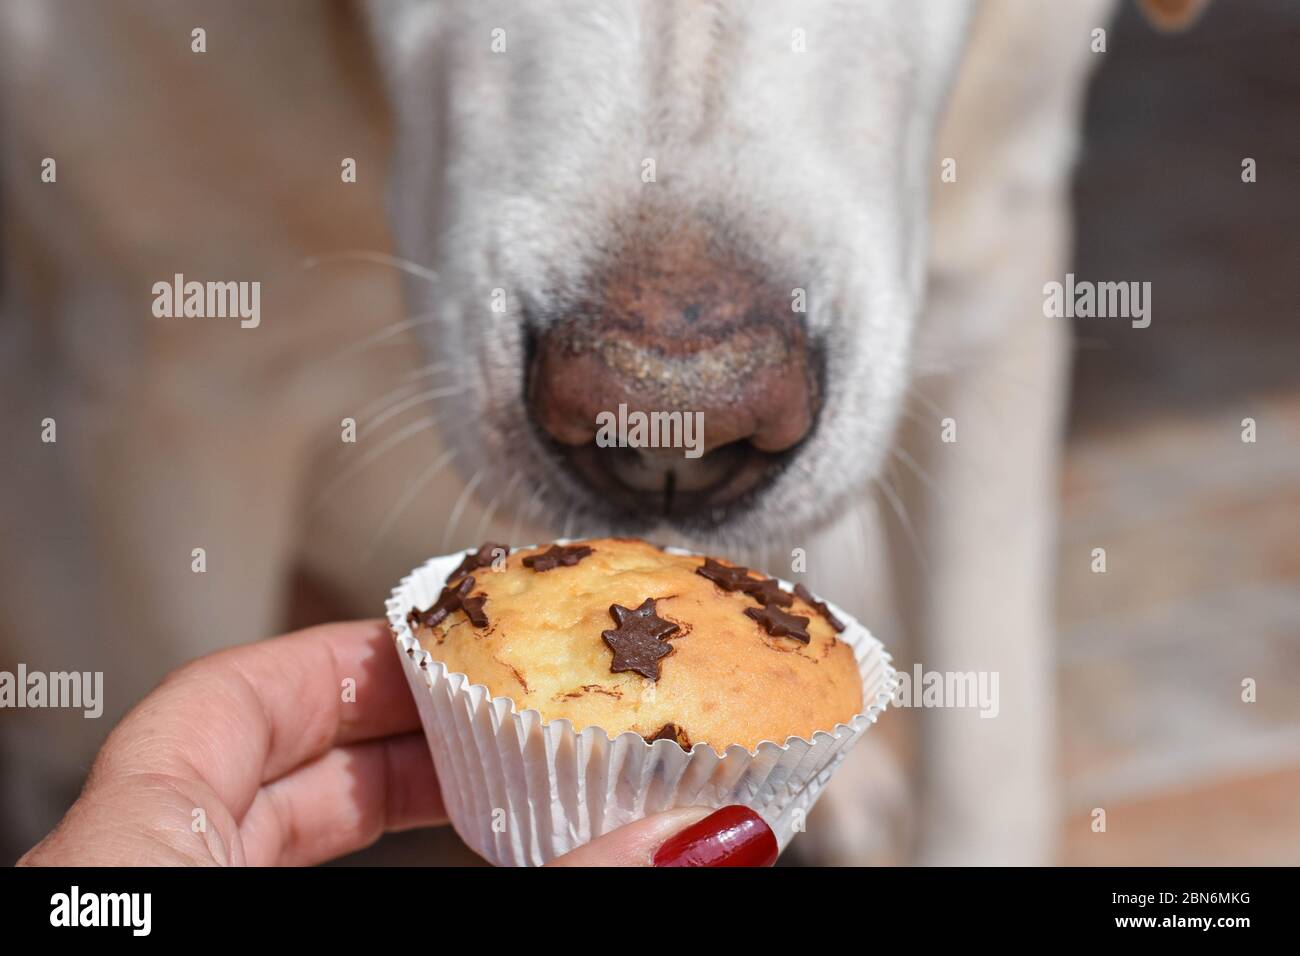 Schöne Labrador Retriever Hunde warten auf ein Genuss - hausgemachte köstliche Vanille muffin whit Chocolate Chips Stockfoto